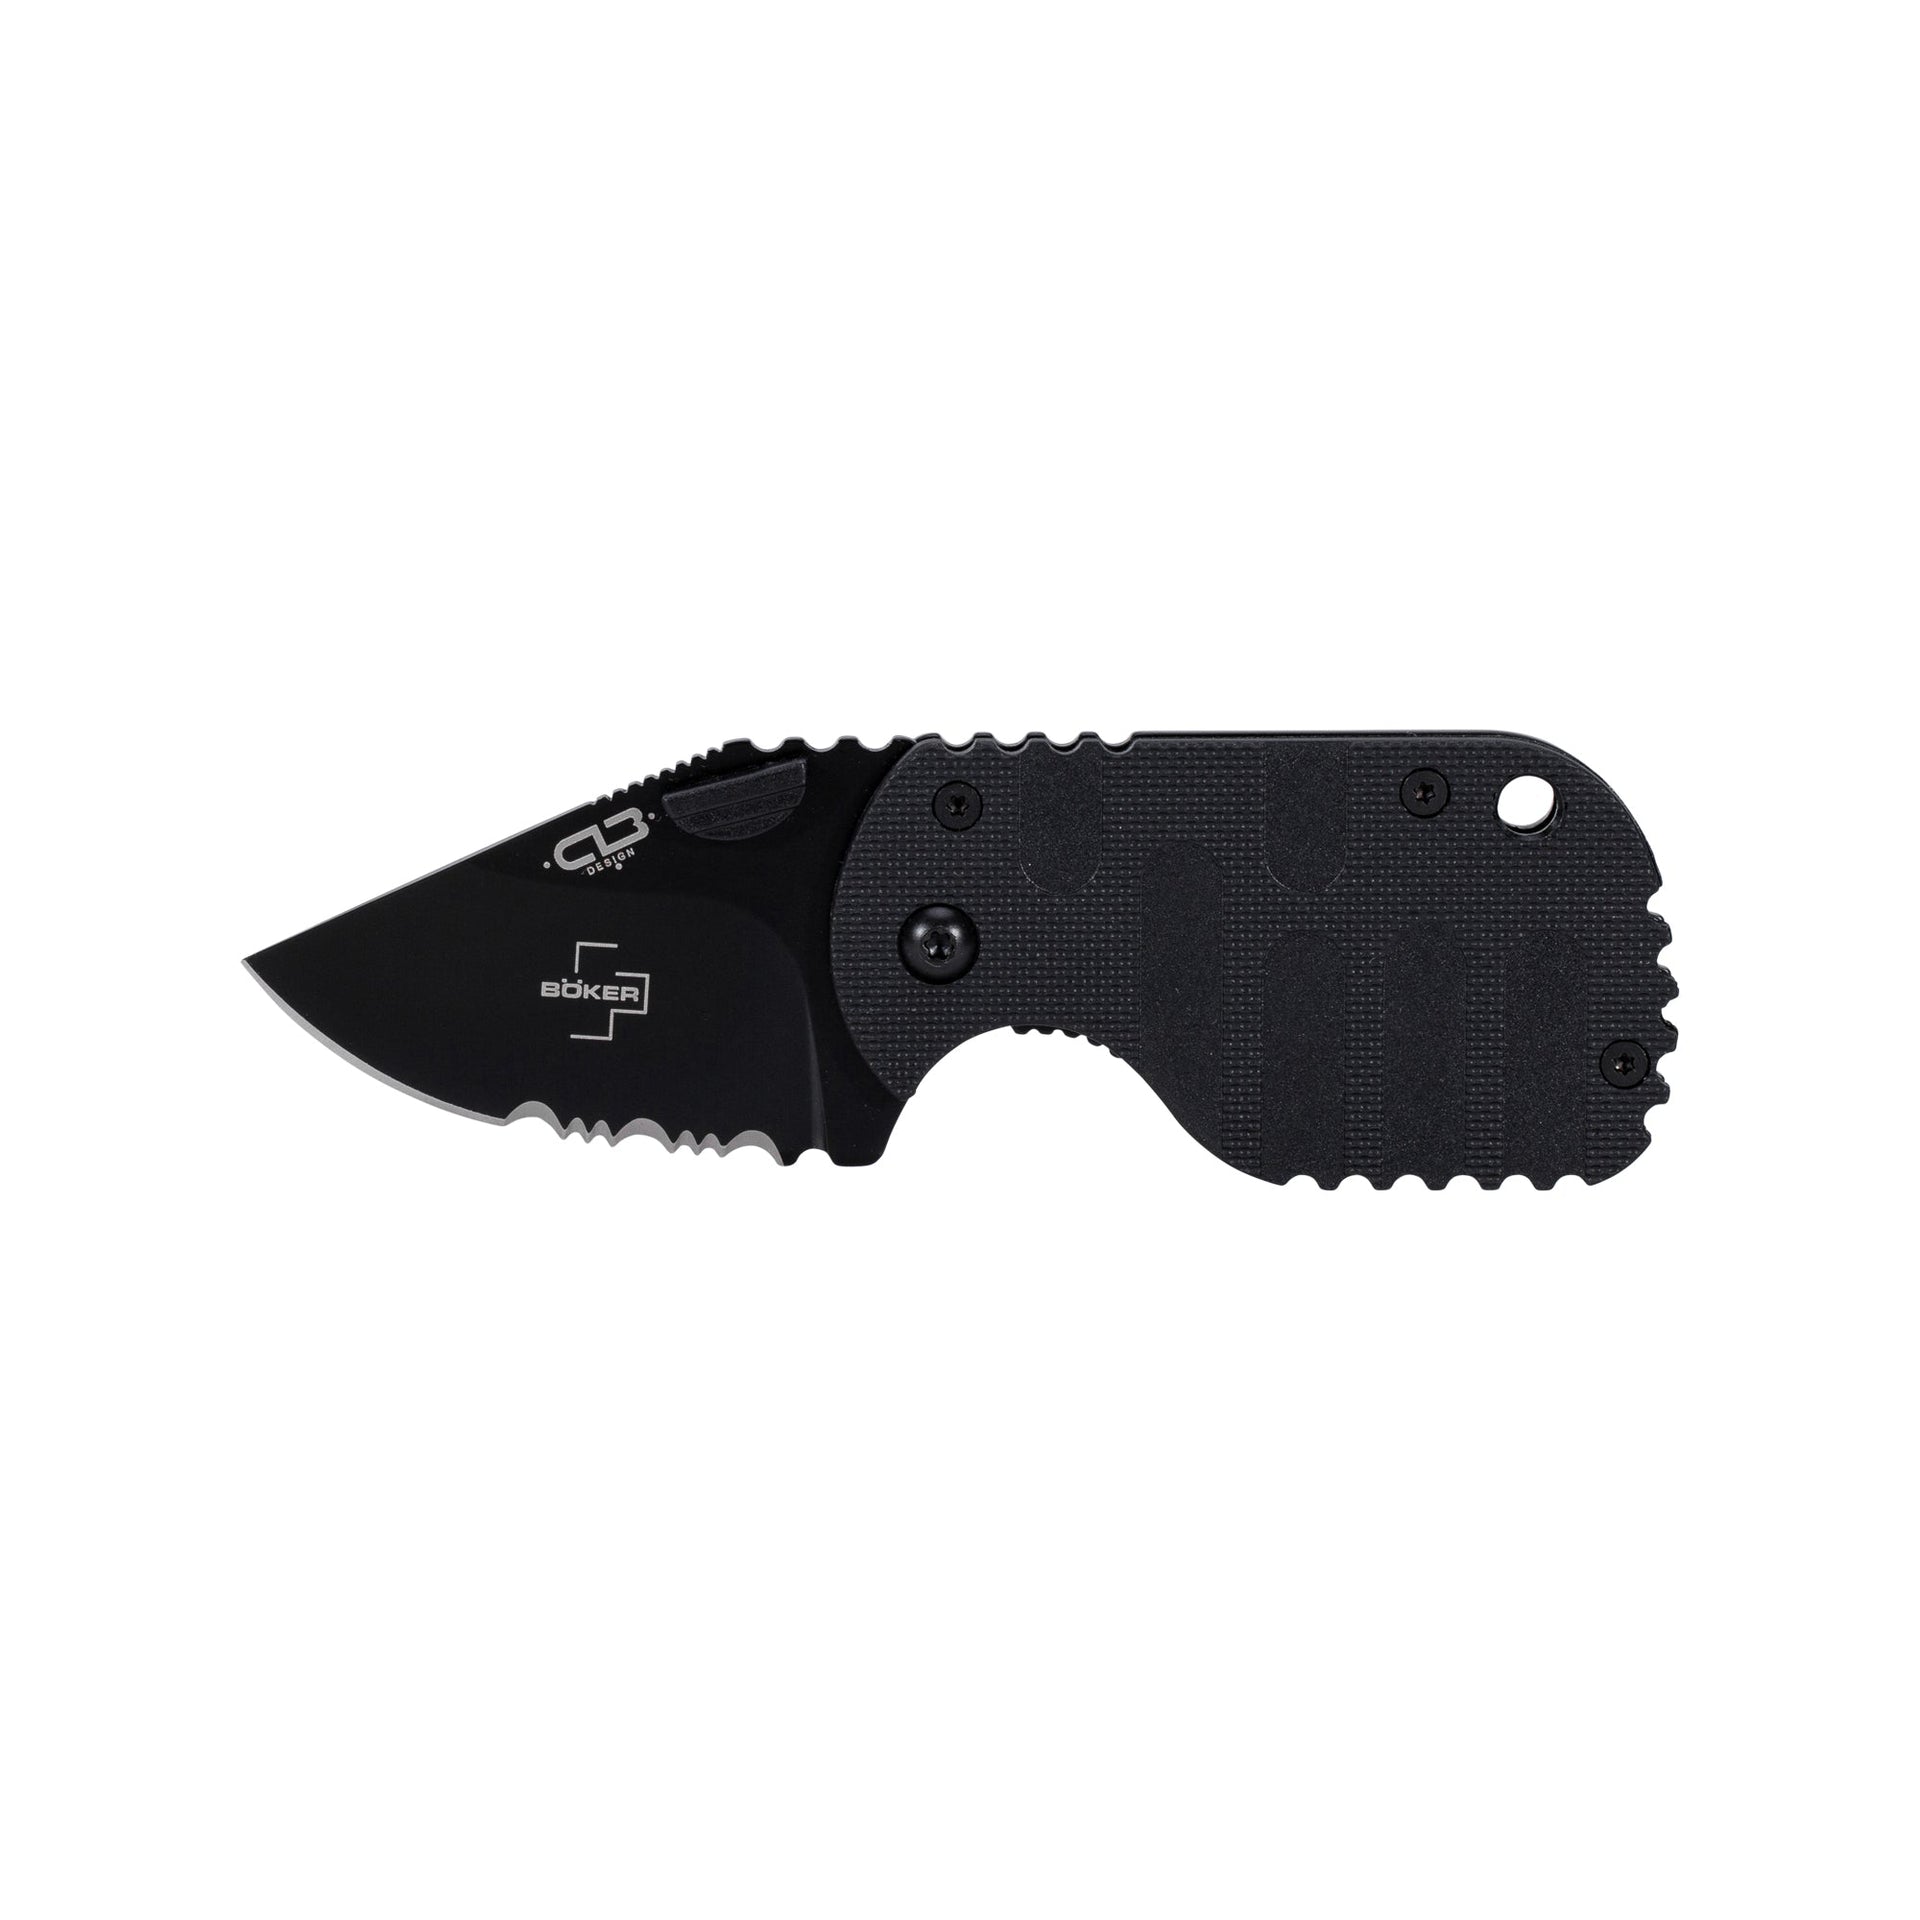 Böker Plus pocket knife Subcom 2.0 All Black